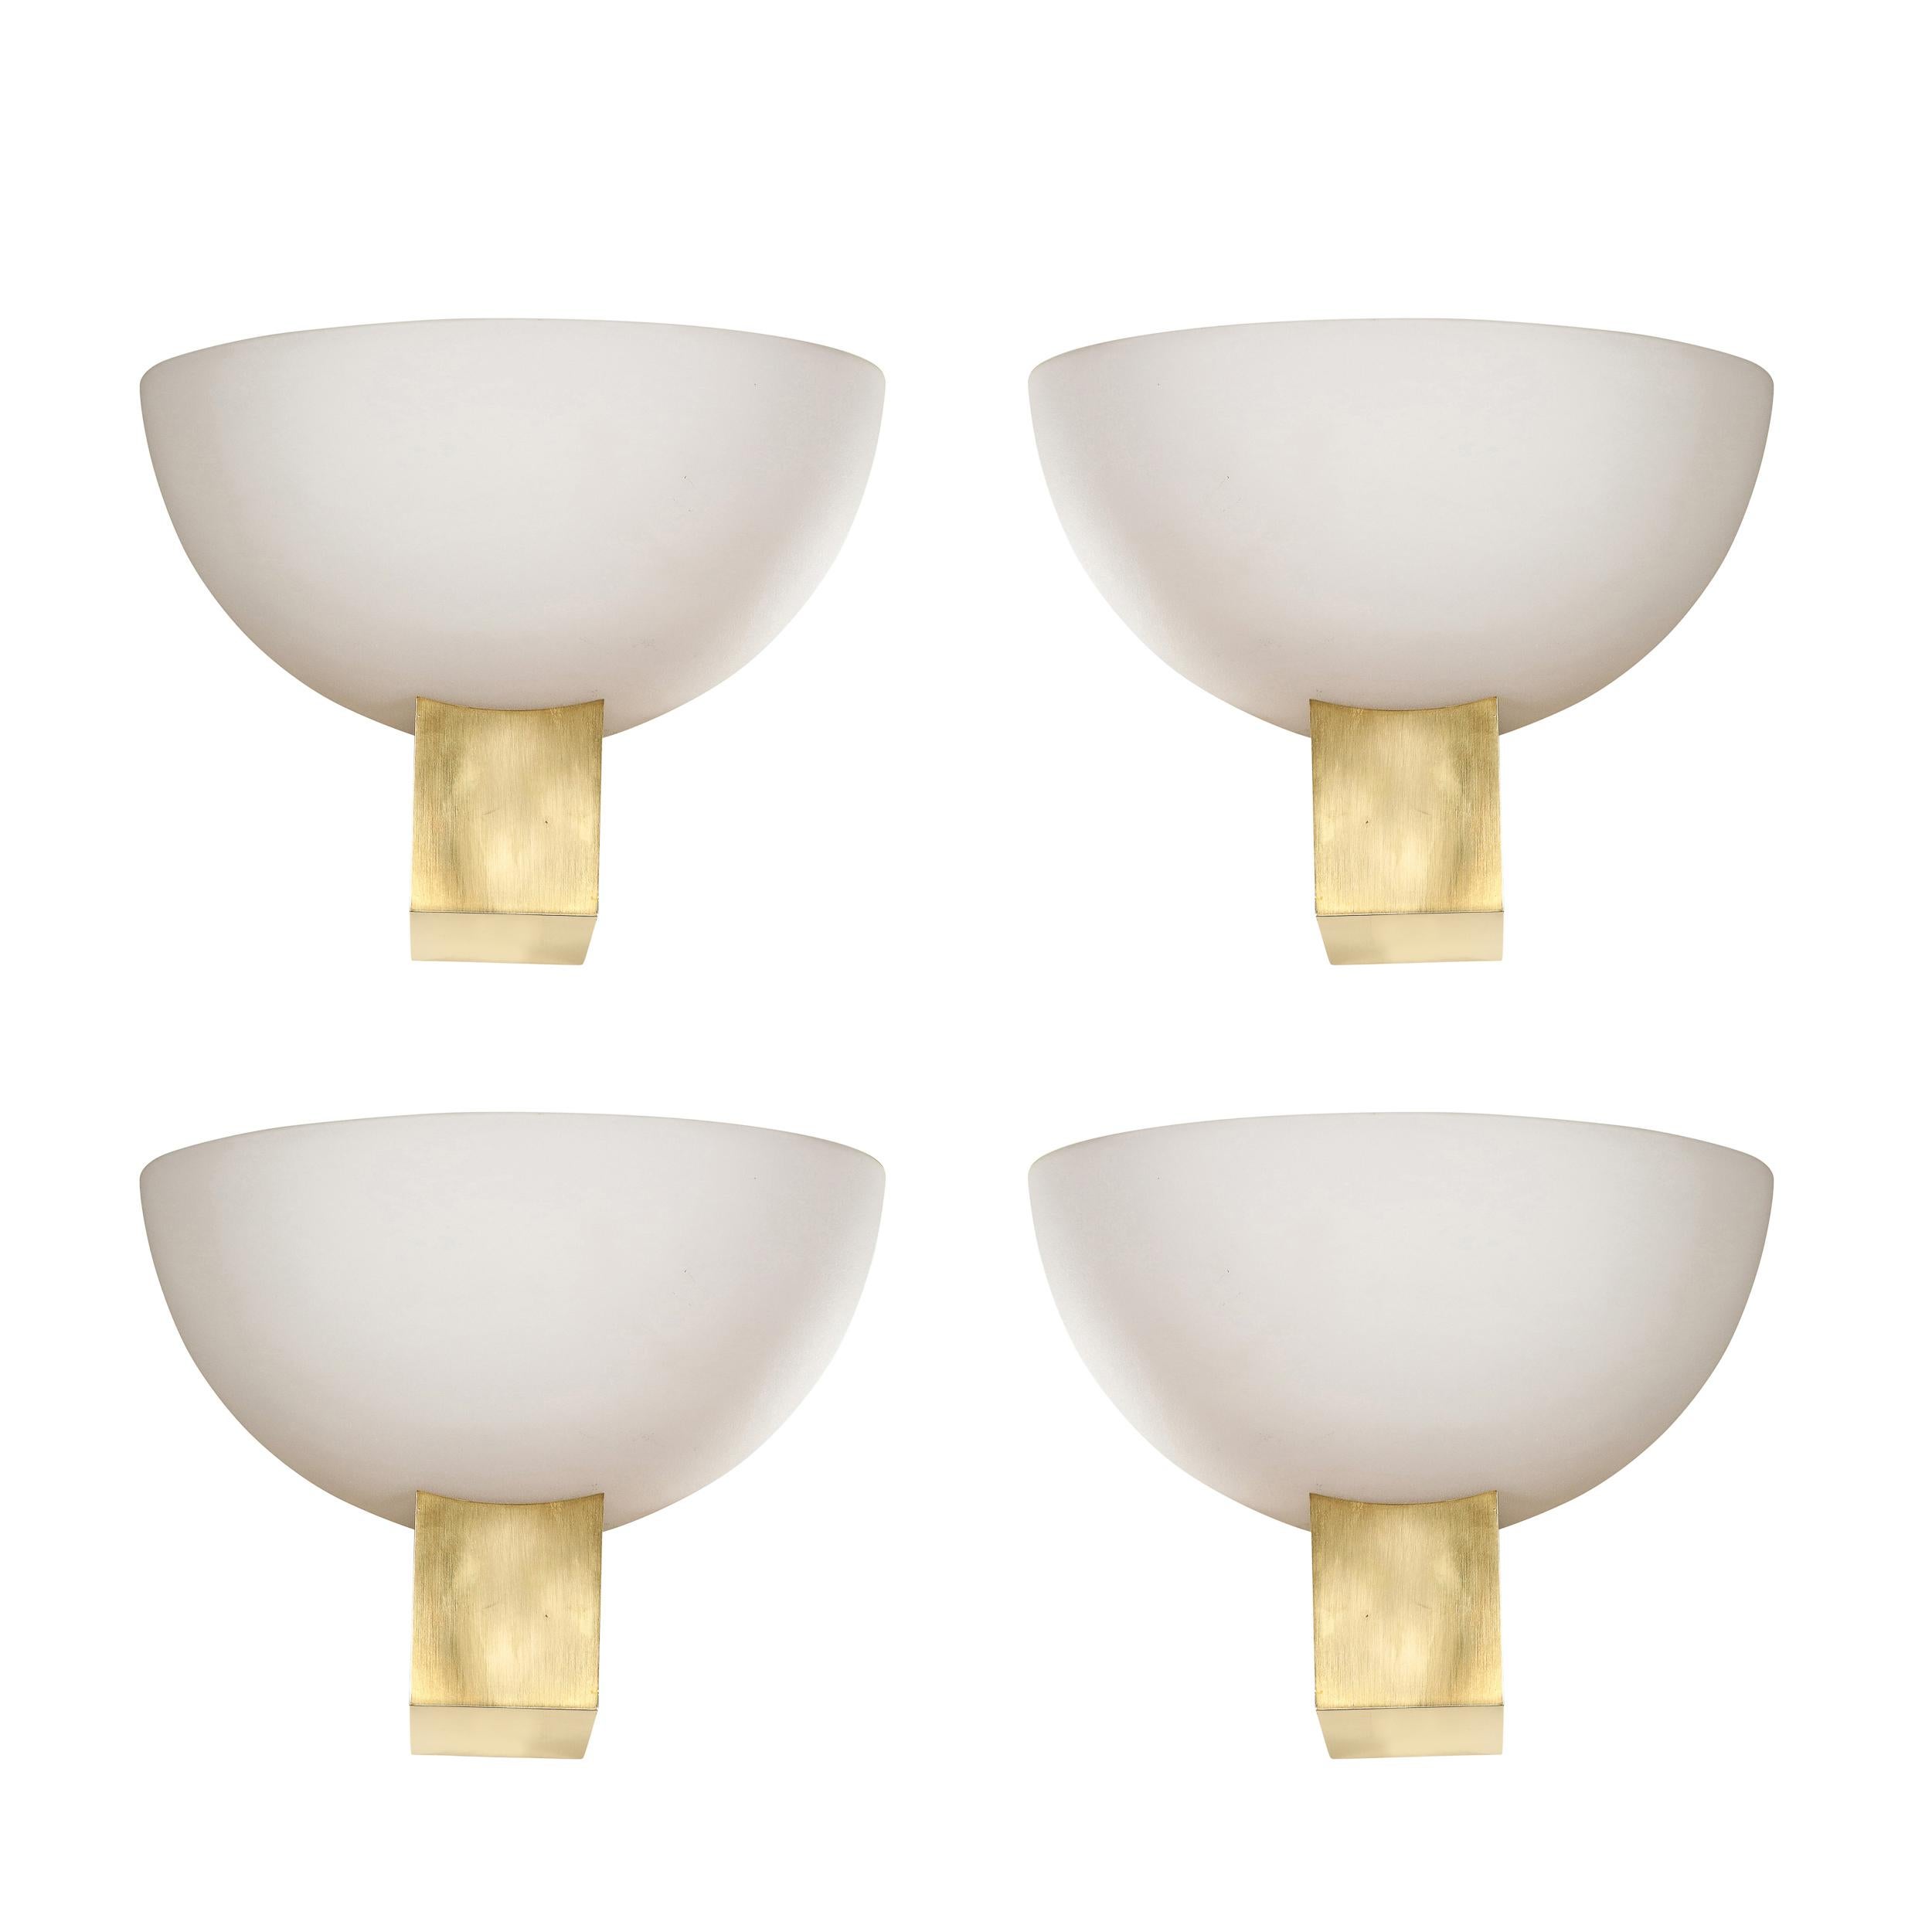 Dieser raffinierte und atemberaubende Satz von vier Art-Déco-Leuchten aus Messing und Milchglas mit umgekehrter Kuppel wurde um 1940 von dem angesehenen Atelier Jean Perzel in Frankreich hergestellt. Sie bestehen aus volumetrischen, rechteckigen